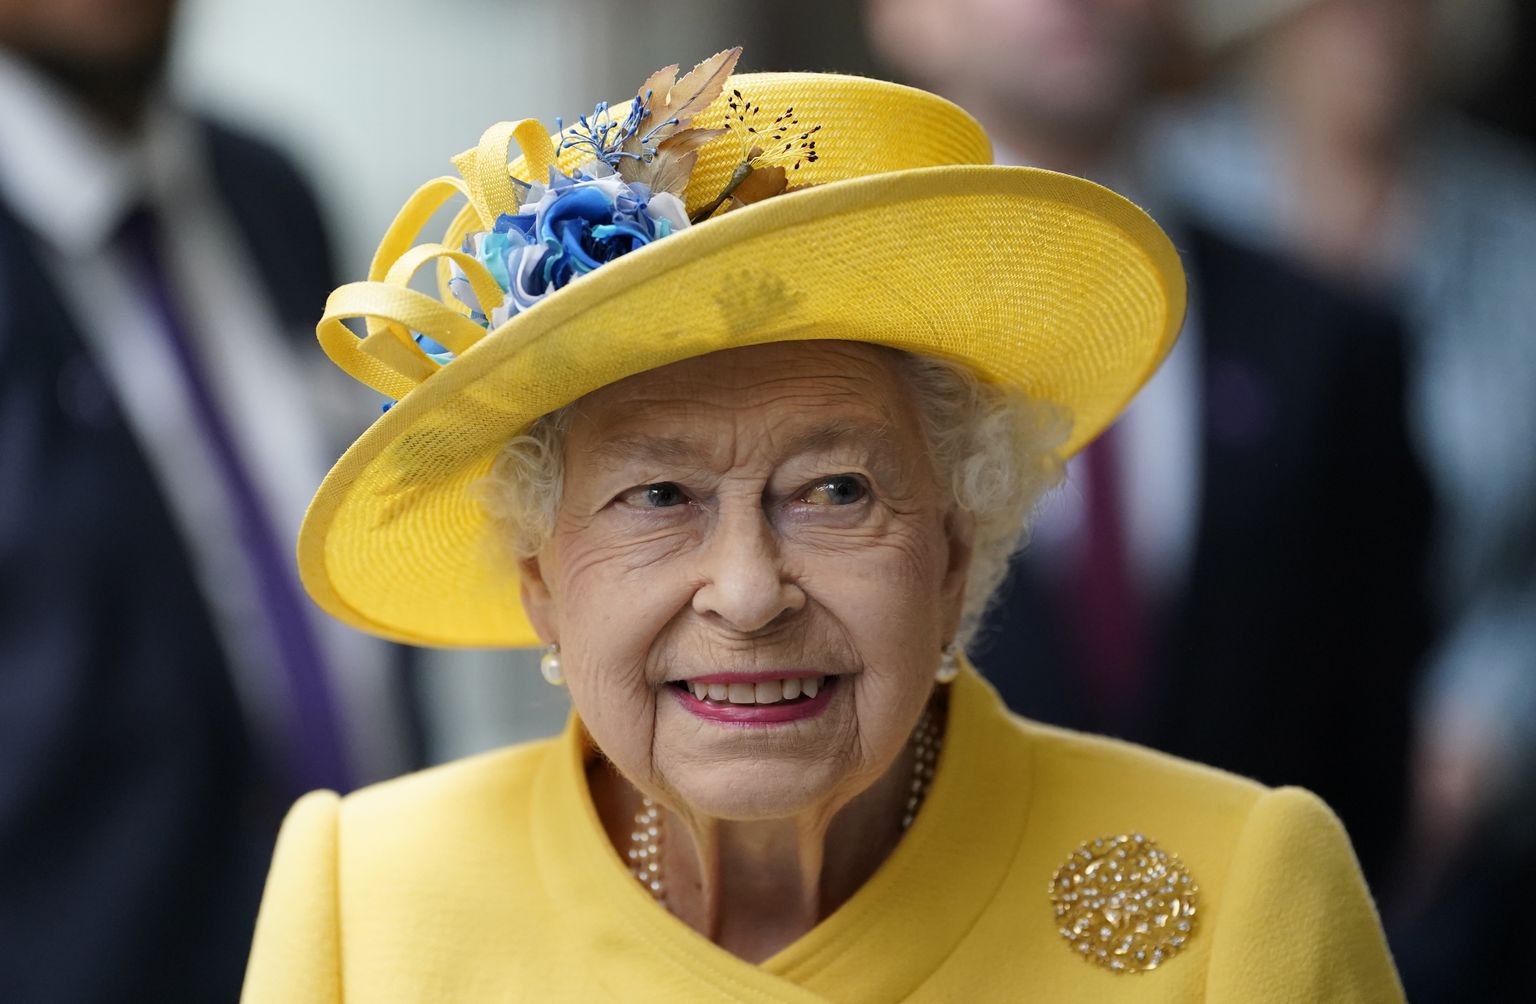 Kuninganna Elizabeth II avaldas möödunud nädalal peenelt oma riietusega toetust Ukrainale.